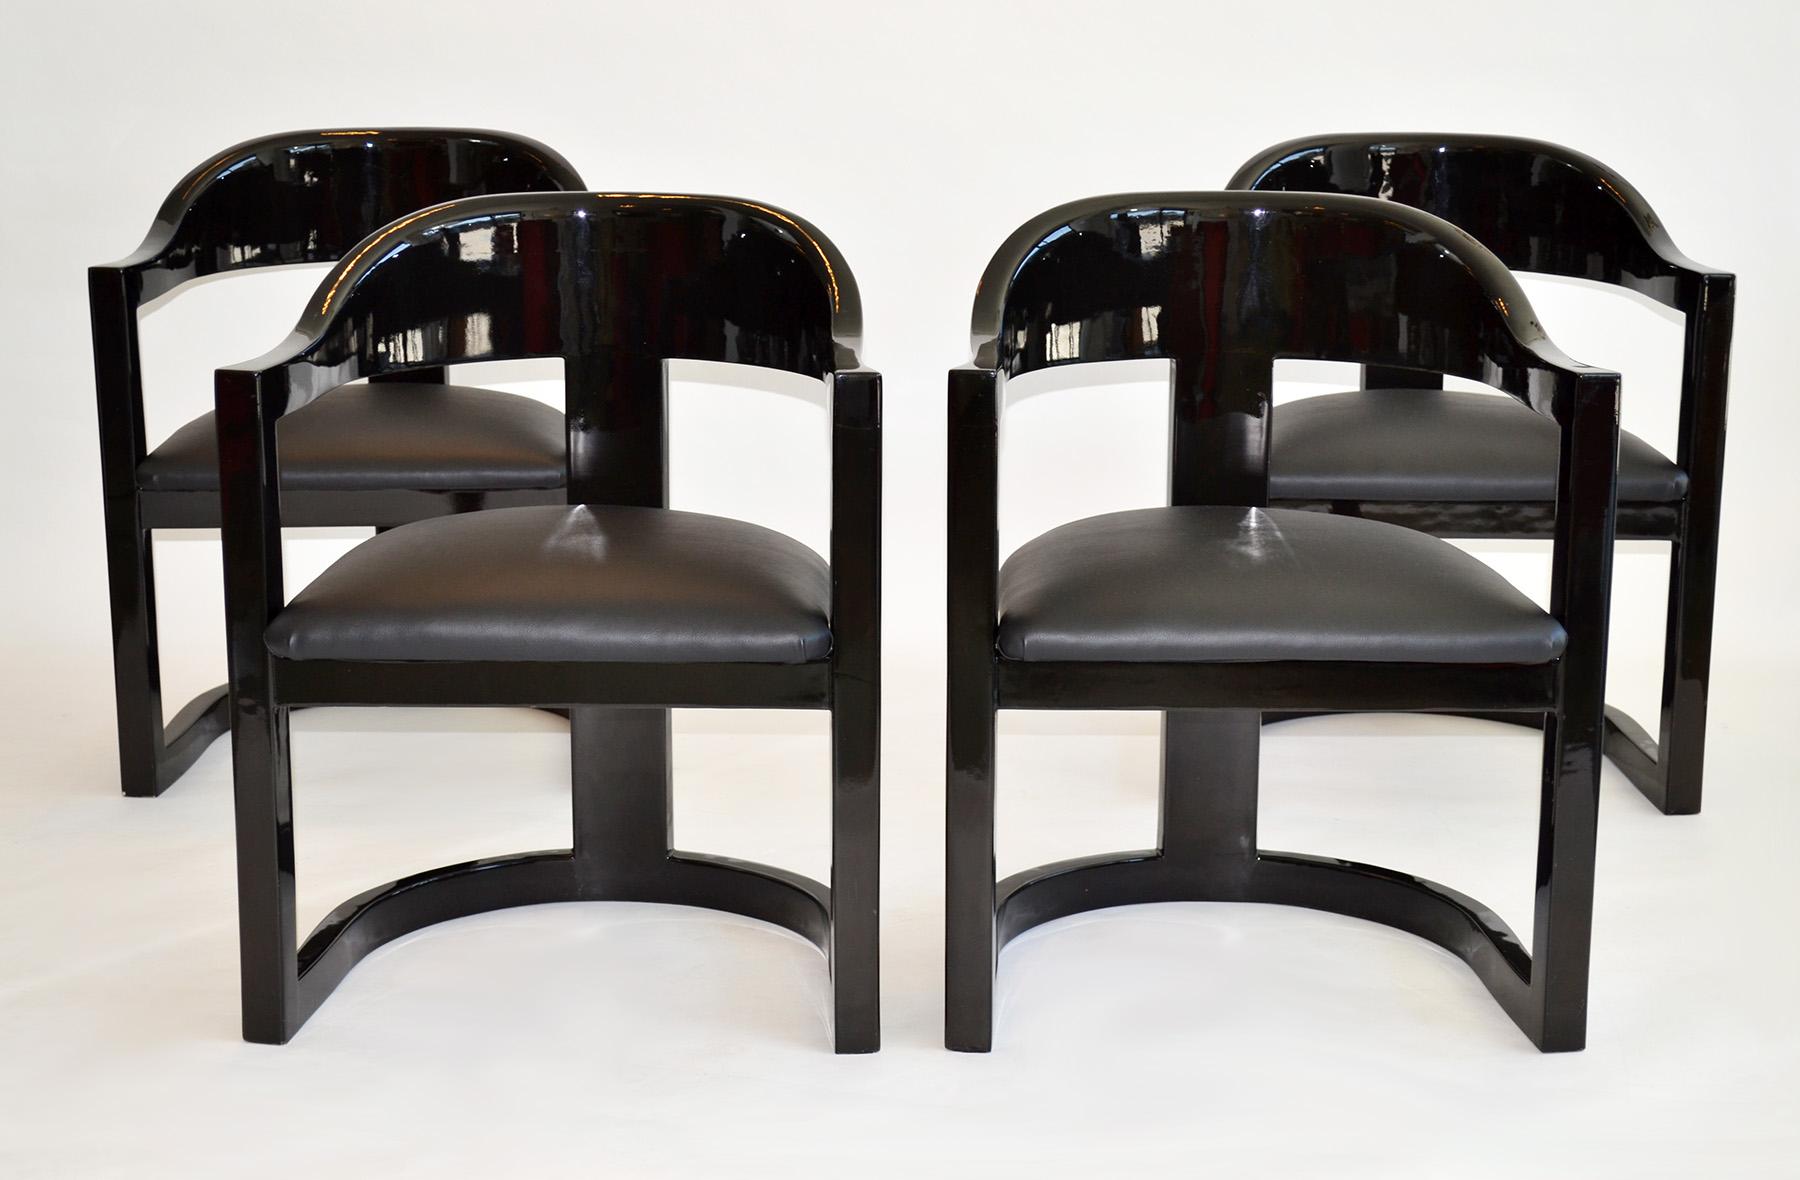 Ensemble de quatre chaises de salle à manger Springer Onassis en peau de chèvre laquée par Garcel
Conçues dans les années 1980 pour Jimeco Ltda, ces chaises dégagent un air de sophistication et de luxe. Le design épuré et minimaliste s'inspire de